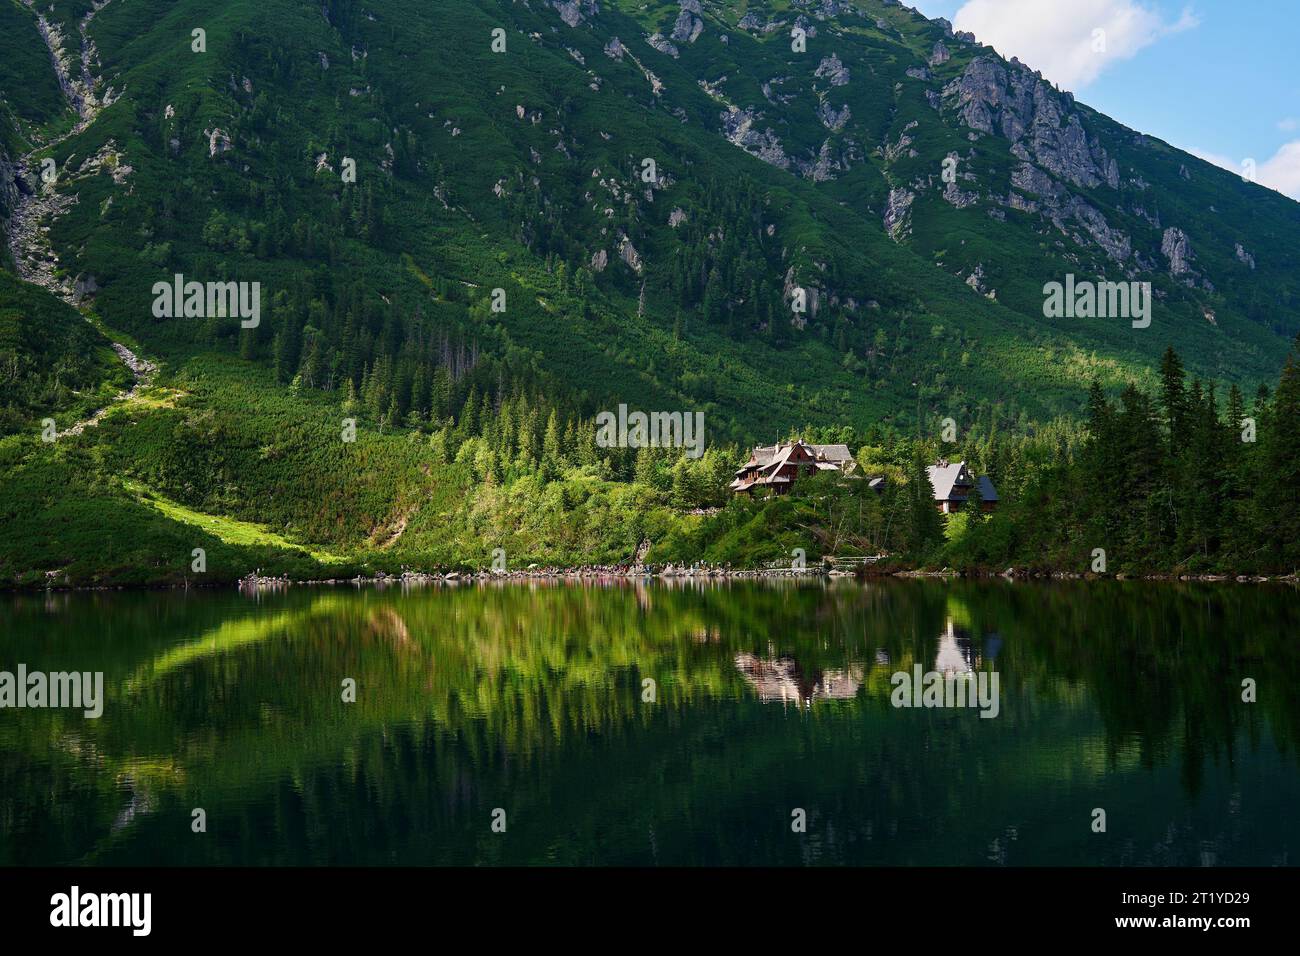 Vue sur la cabine dans les montagnes avec forêt verte. Maison pour les touristes dans le parc national des Tatras près de Morskie Oko ou Eye Sea Lake. Lieu touristique en Pologne Banque D'Images